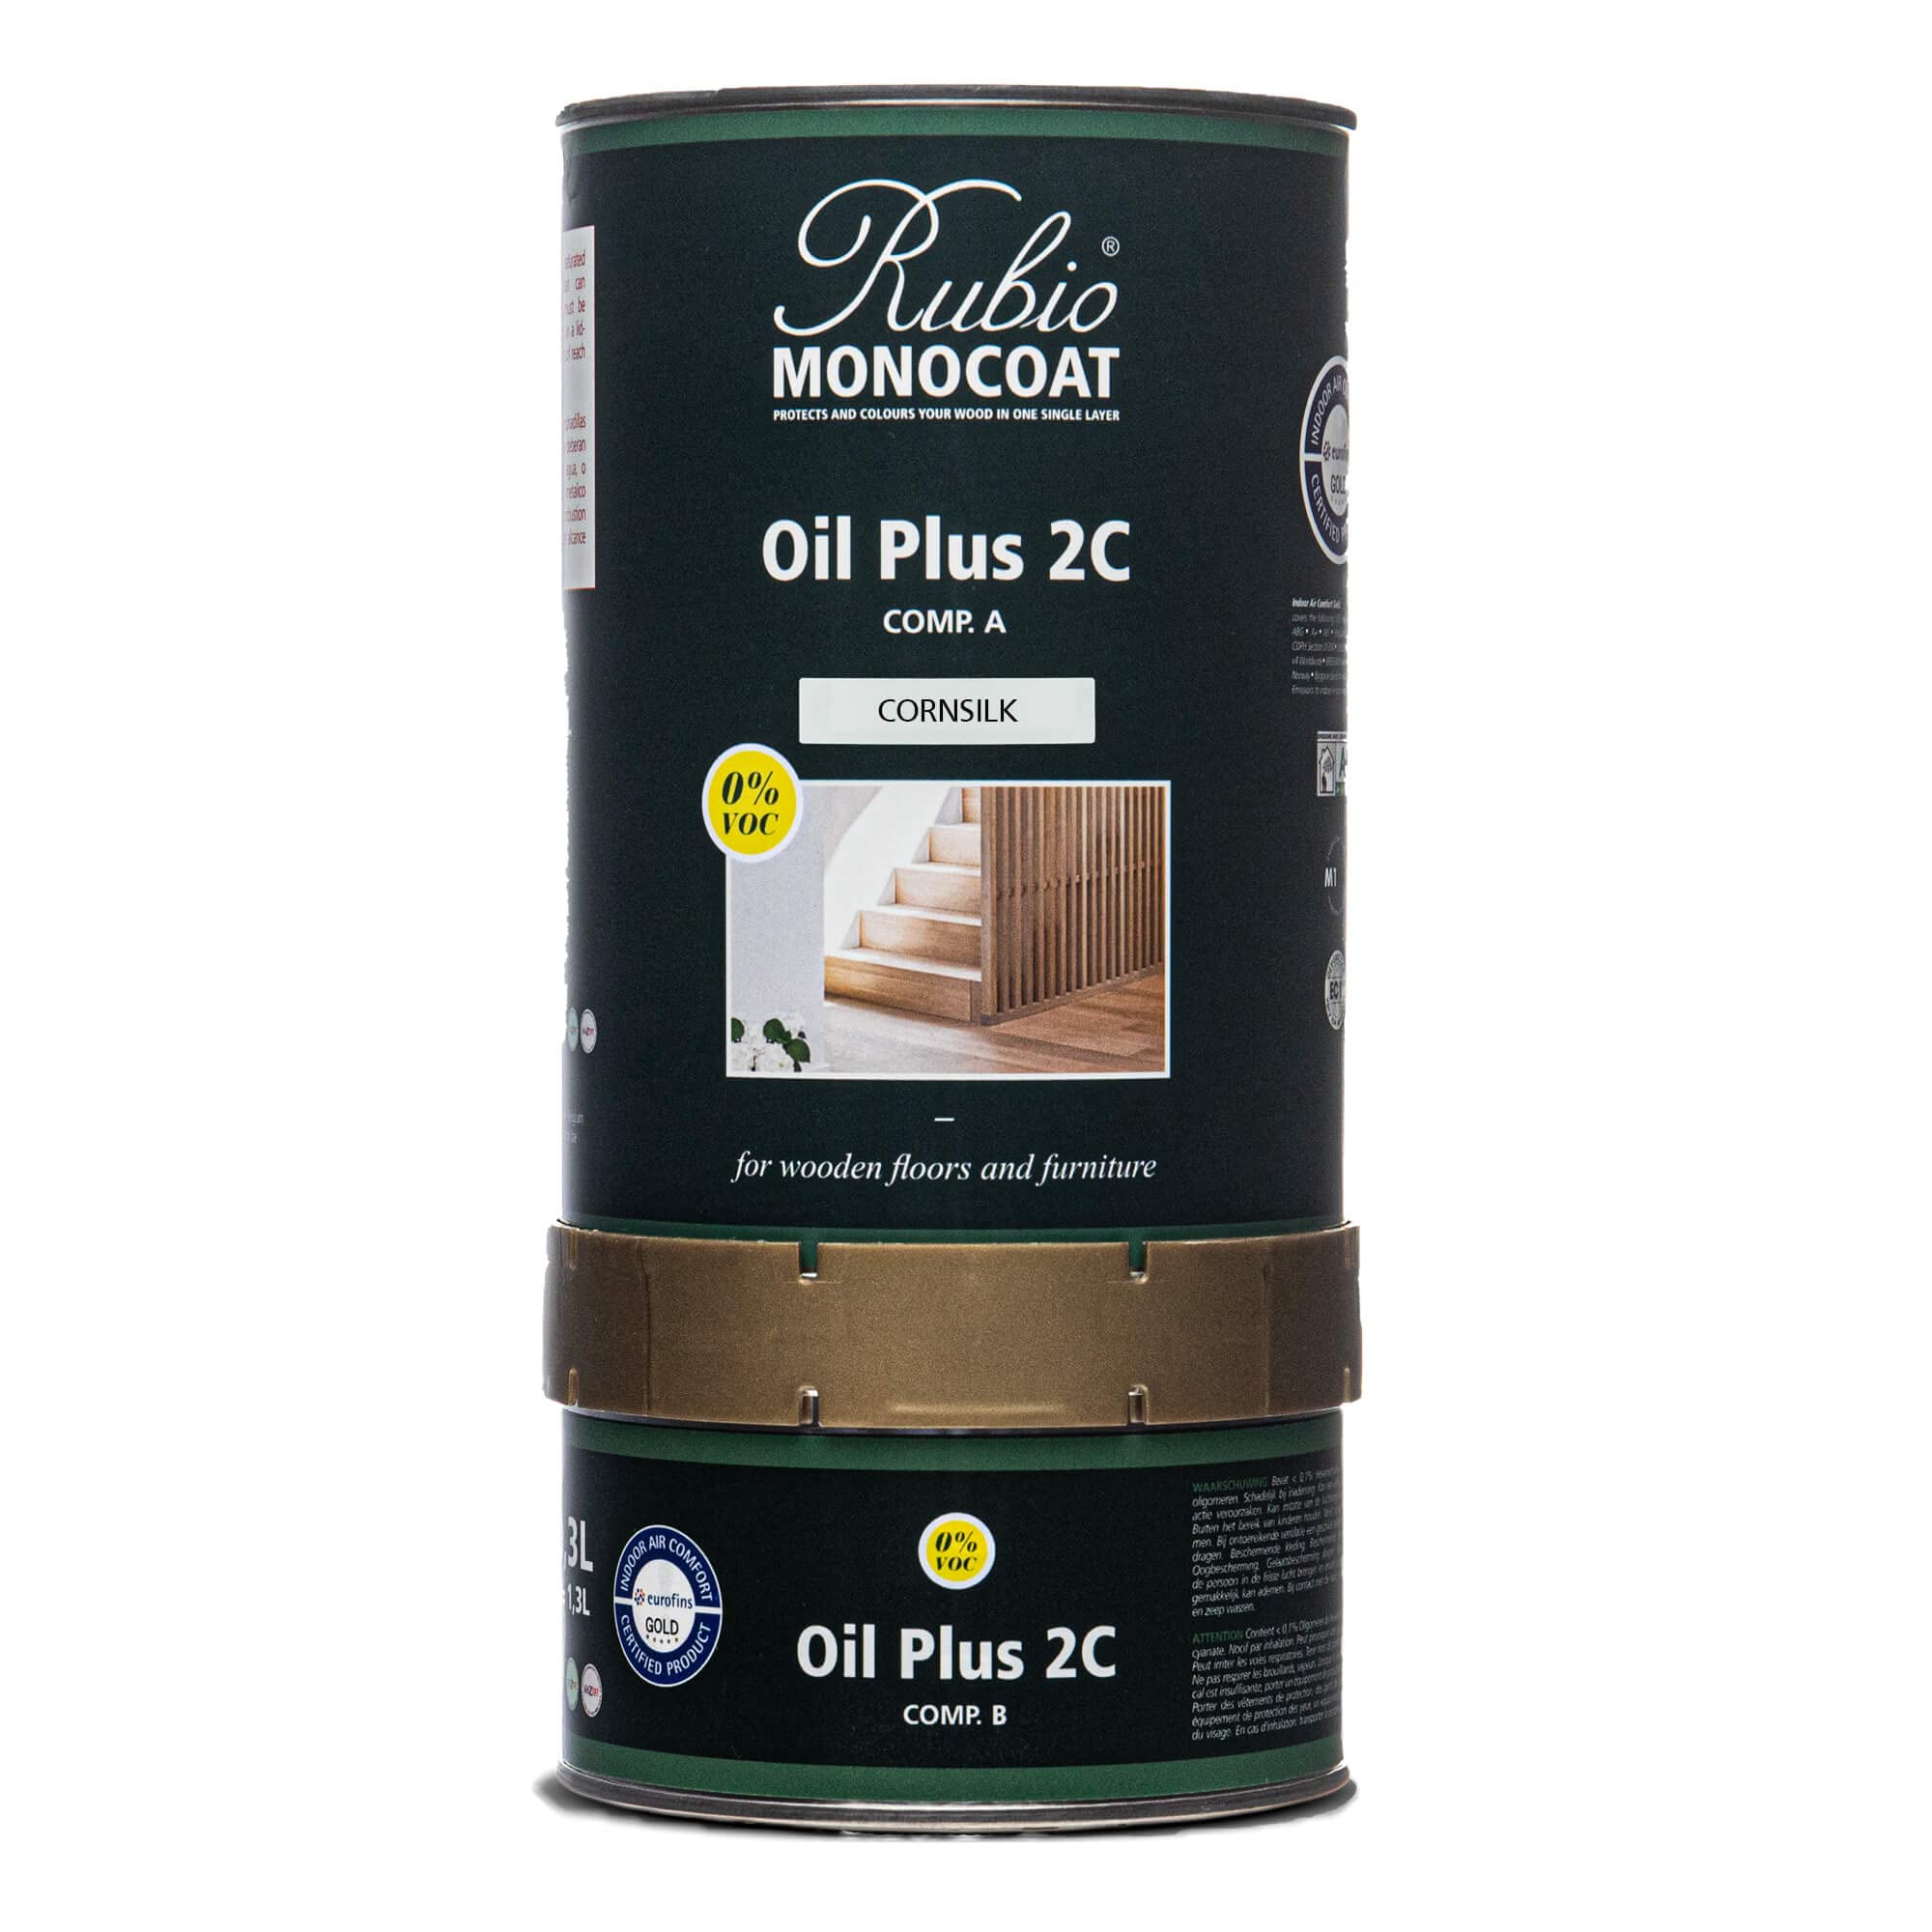 Rubio Monocoat Oil Plus 2C，1.3 升，玉米丝，室内木材着色剂和面漆，食品安全，简易一层，亚麻籽油，植物基，不含 VOC/溶剂，家具和地板硬蜡油